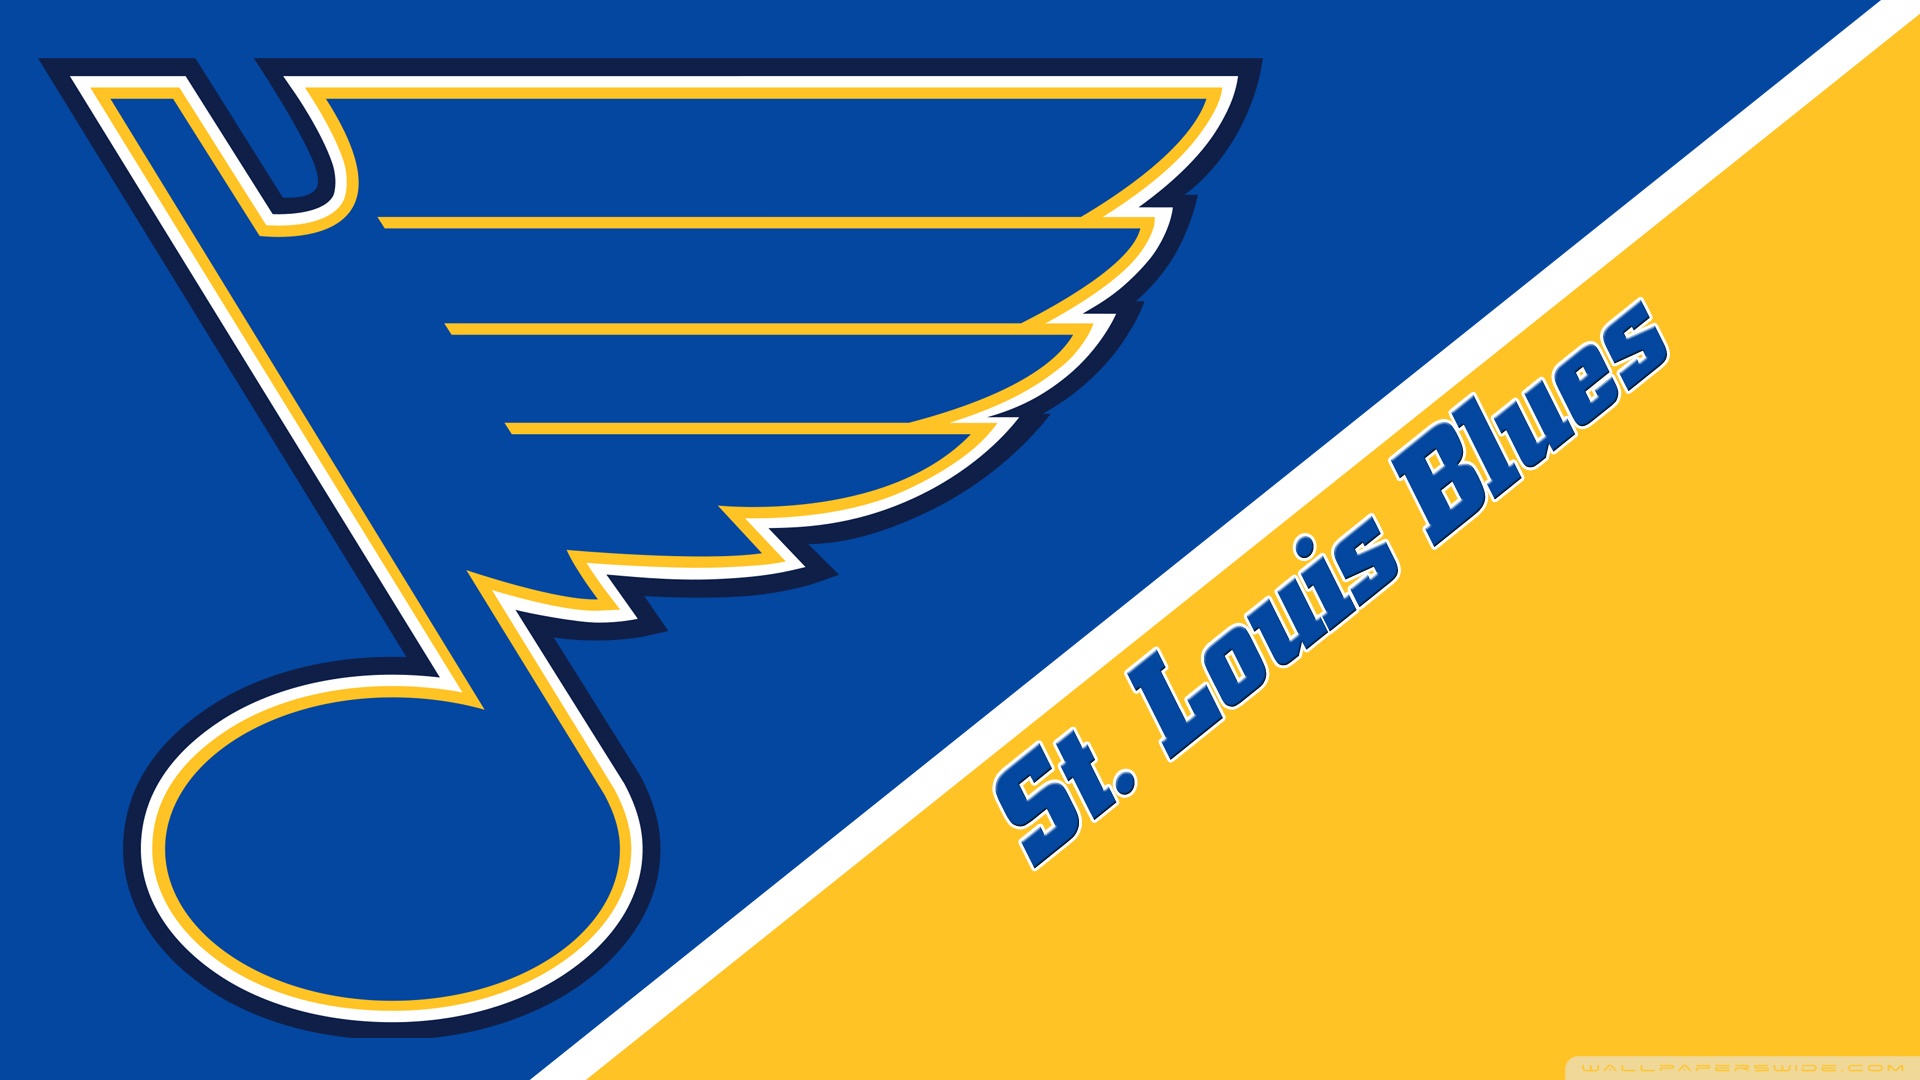 St. Louis Blues Wallpaper, Free Download